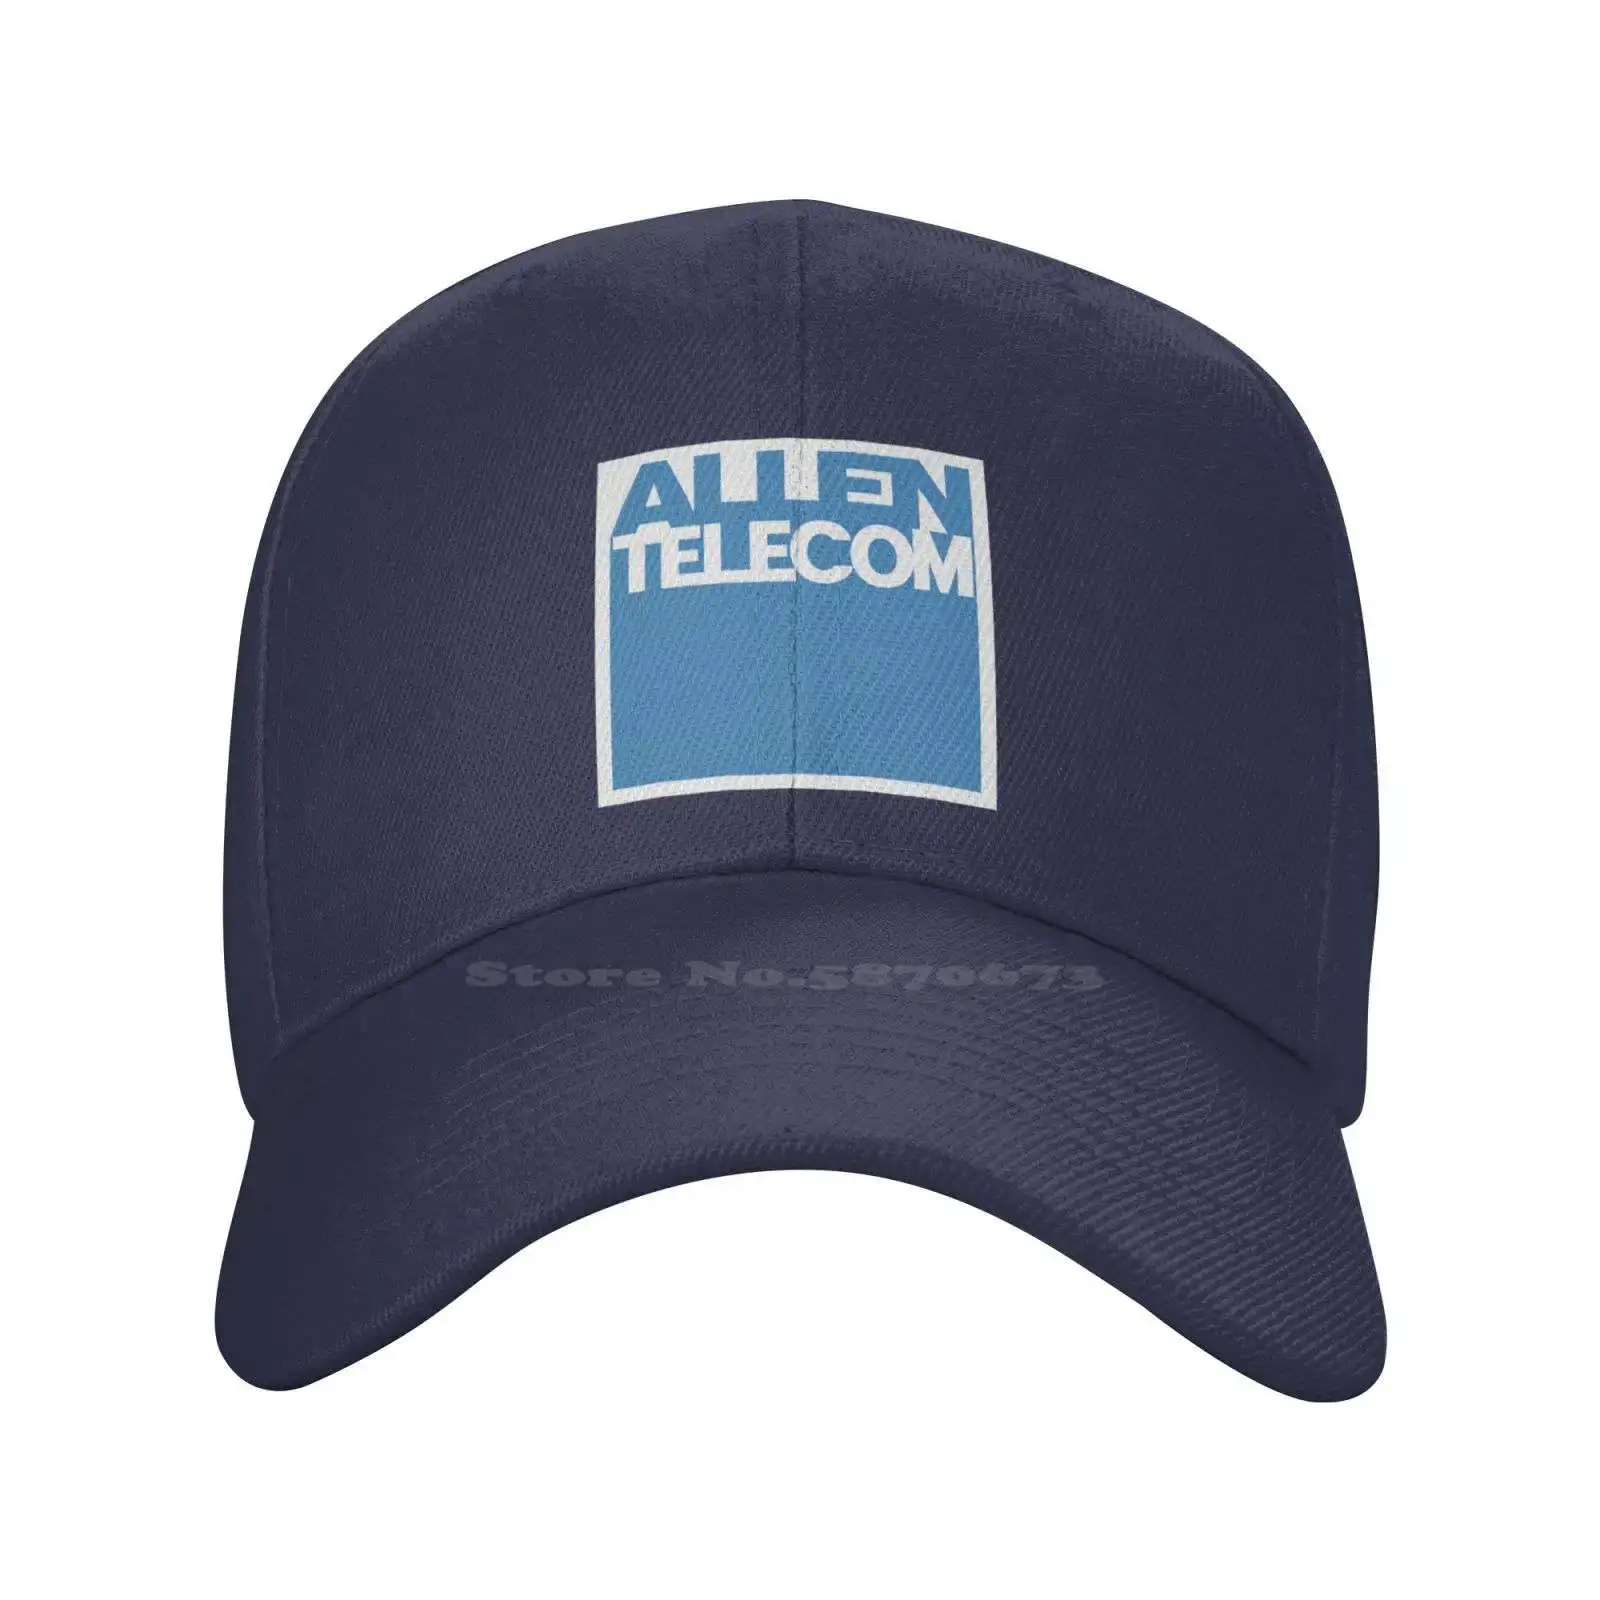 Аллен качественный логотип Телеком моды джинсовая шапка вязаная шляпа бейсболка 2